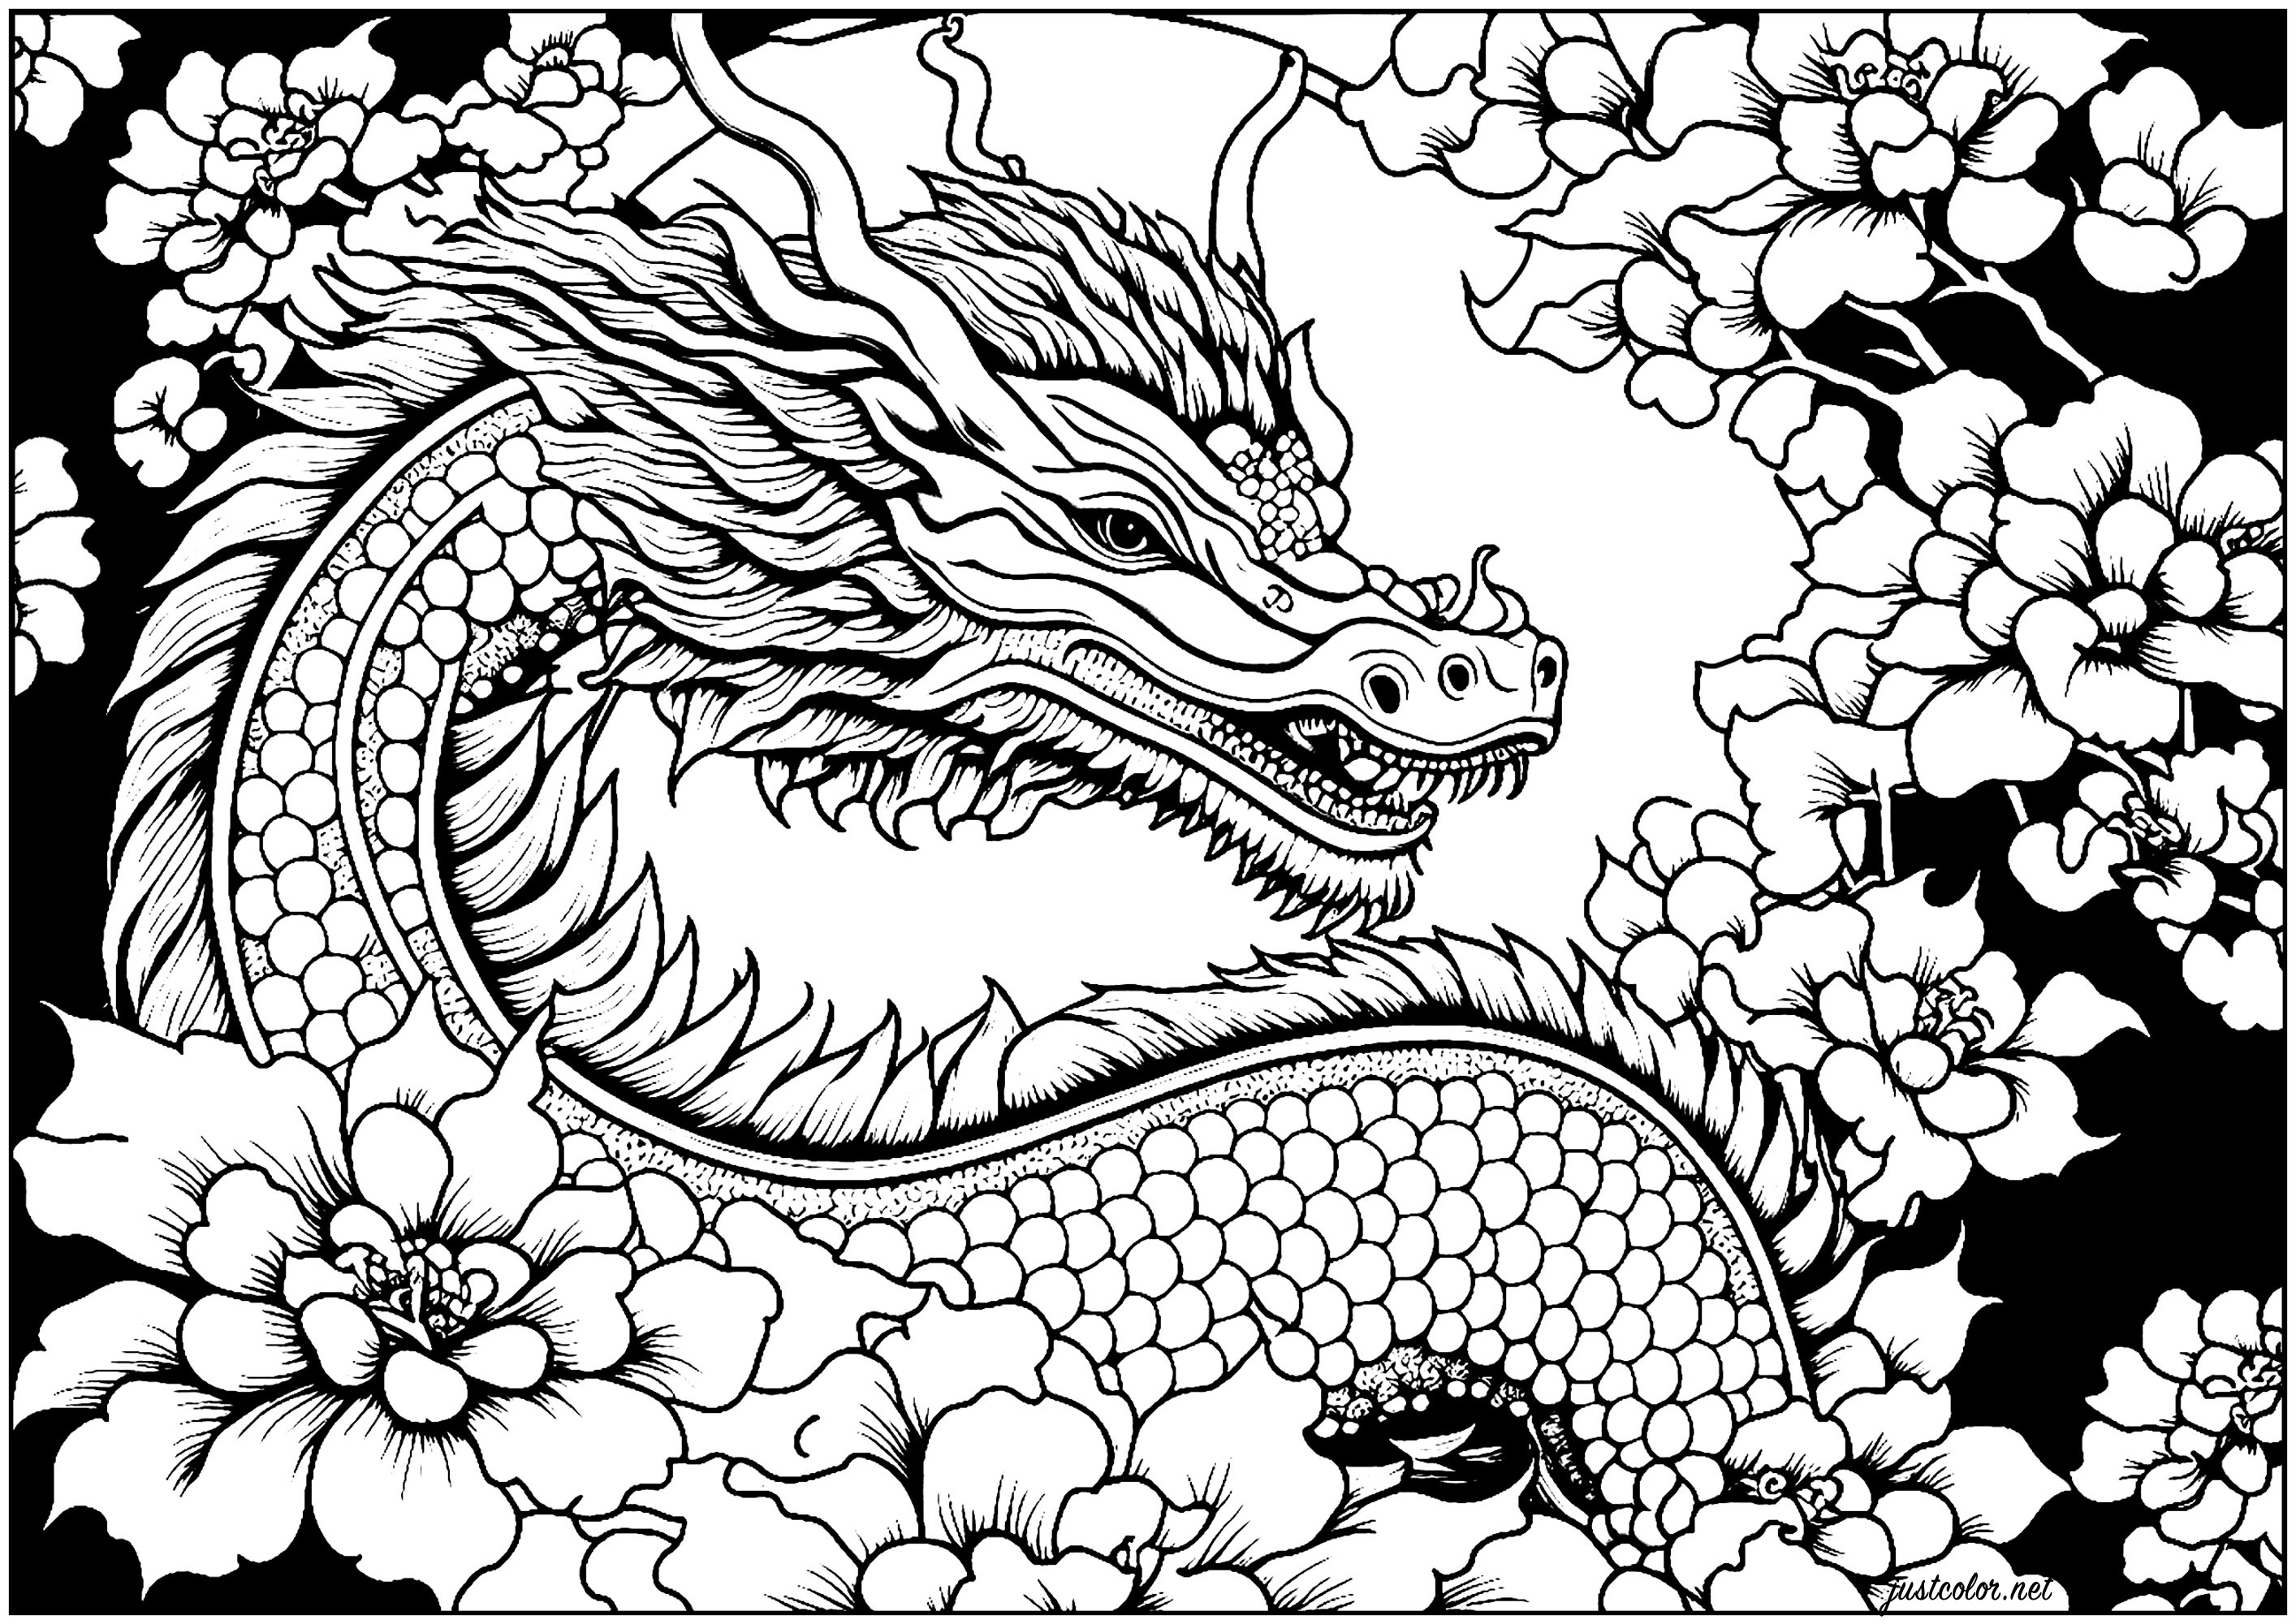 Bonita coloração com um dragão rodeado de flores, com um fundo preto. O dragão é representado numa postura poderosa, o que lhe confere uma presença majestosa, contrastando com a suavidade das flores ...